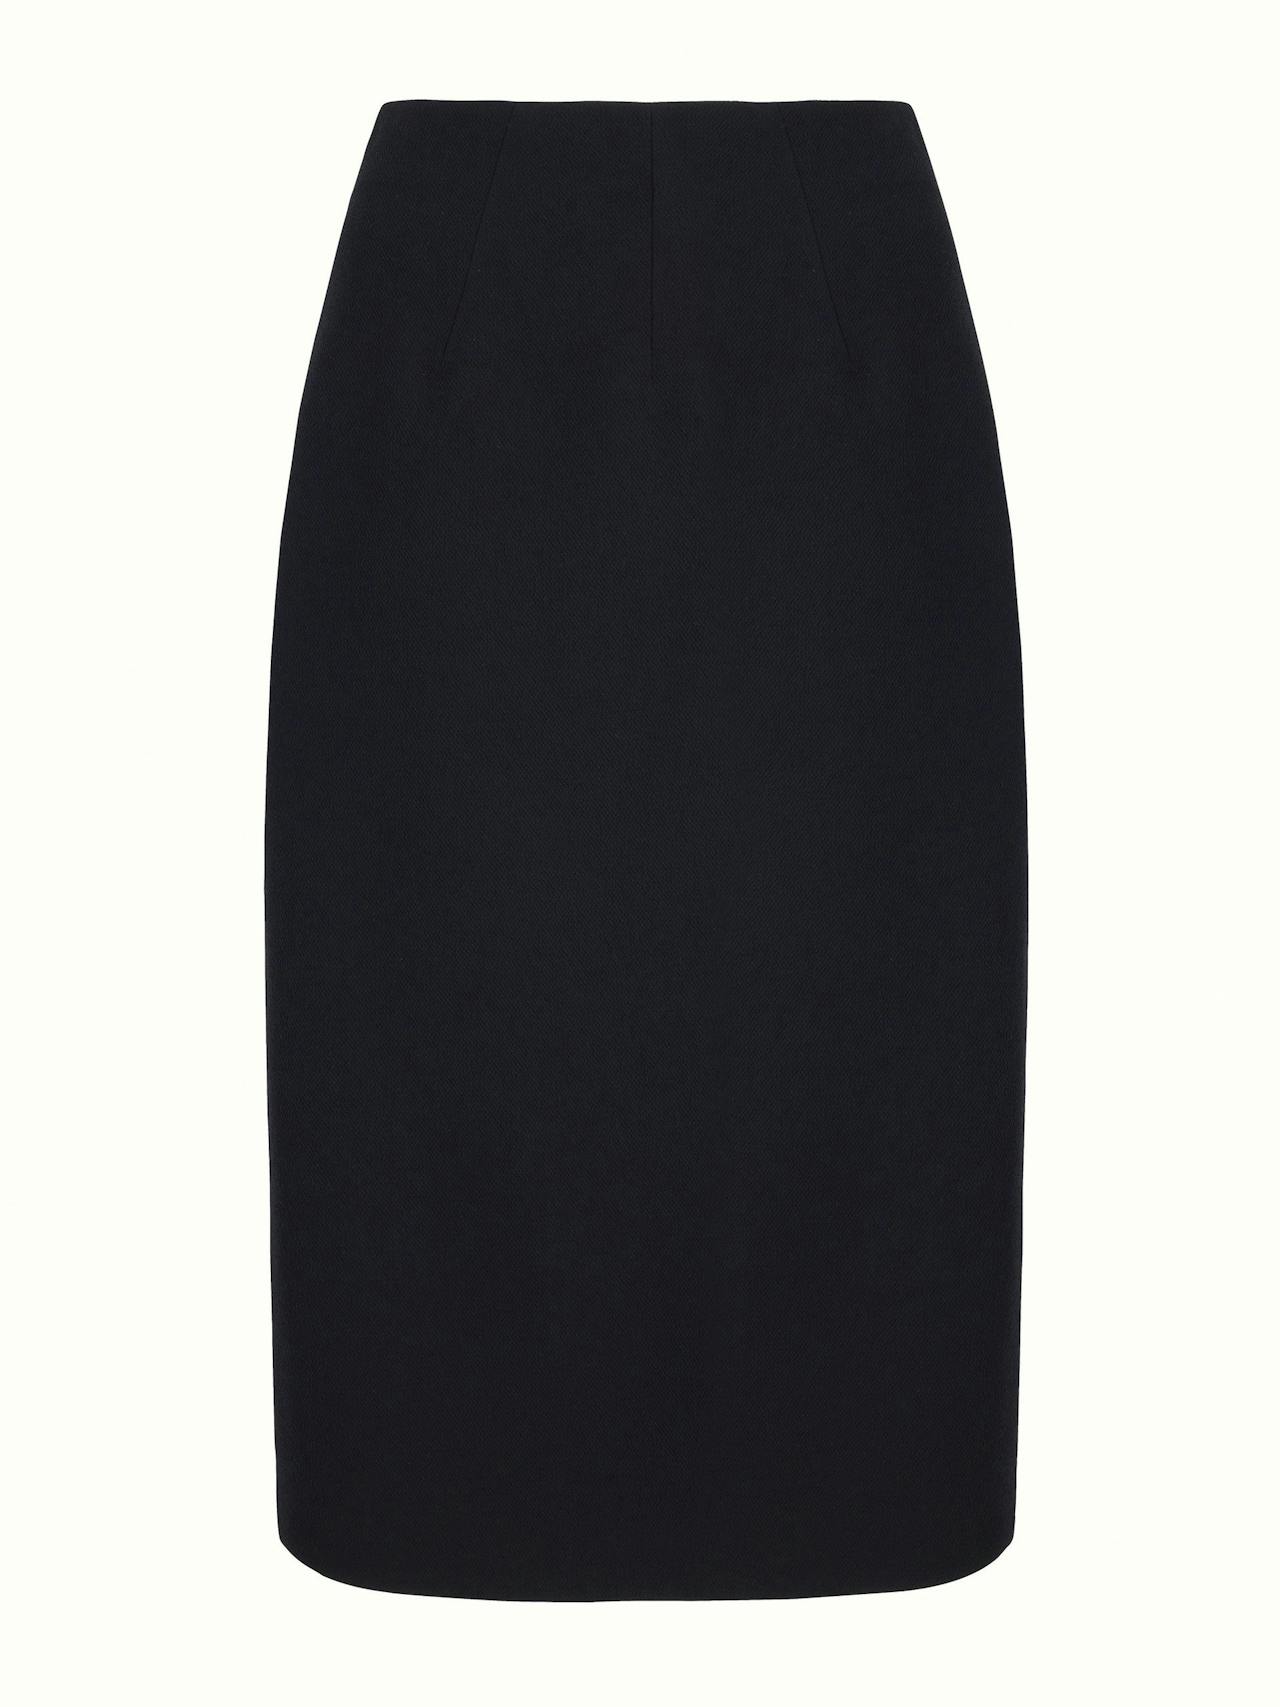 Lorinda pencil skirt in black double crepe